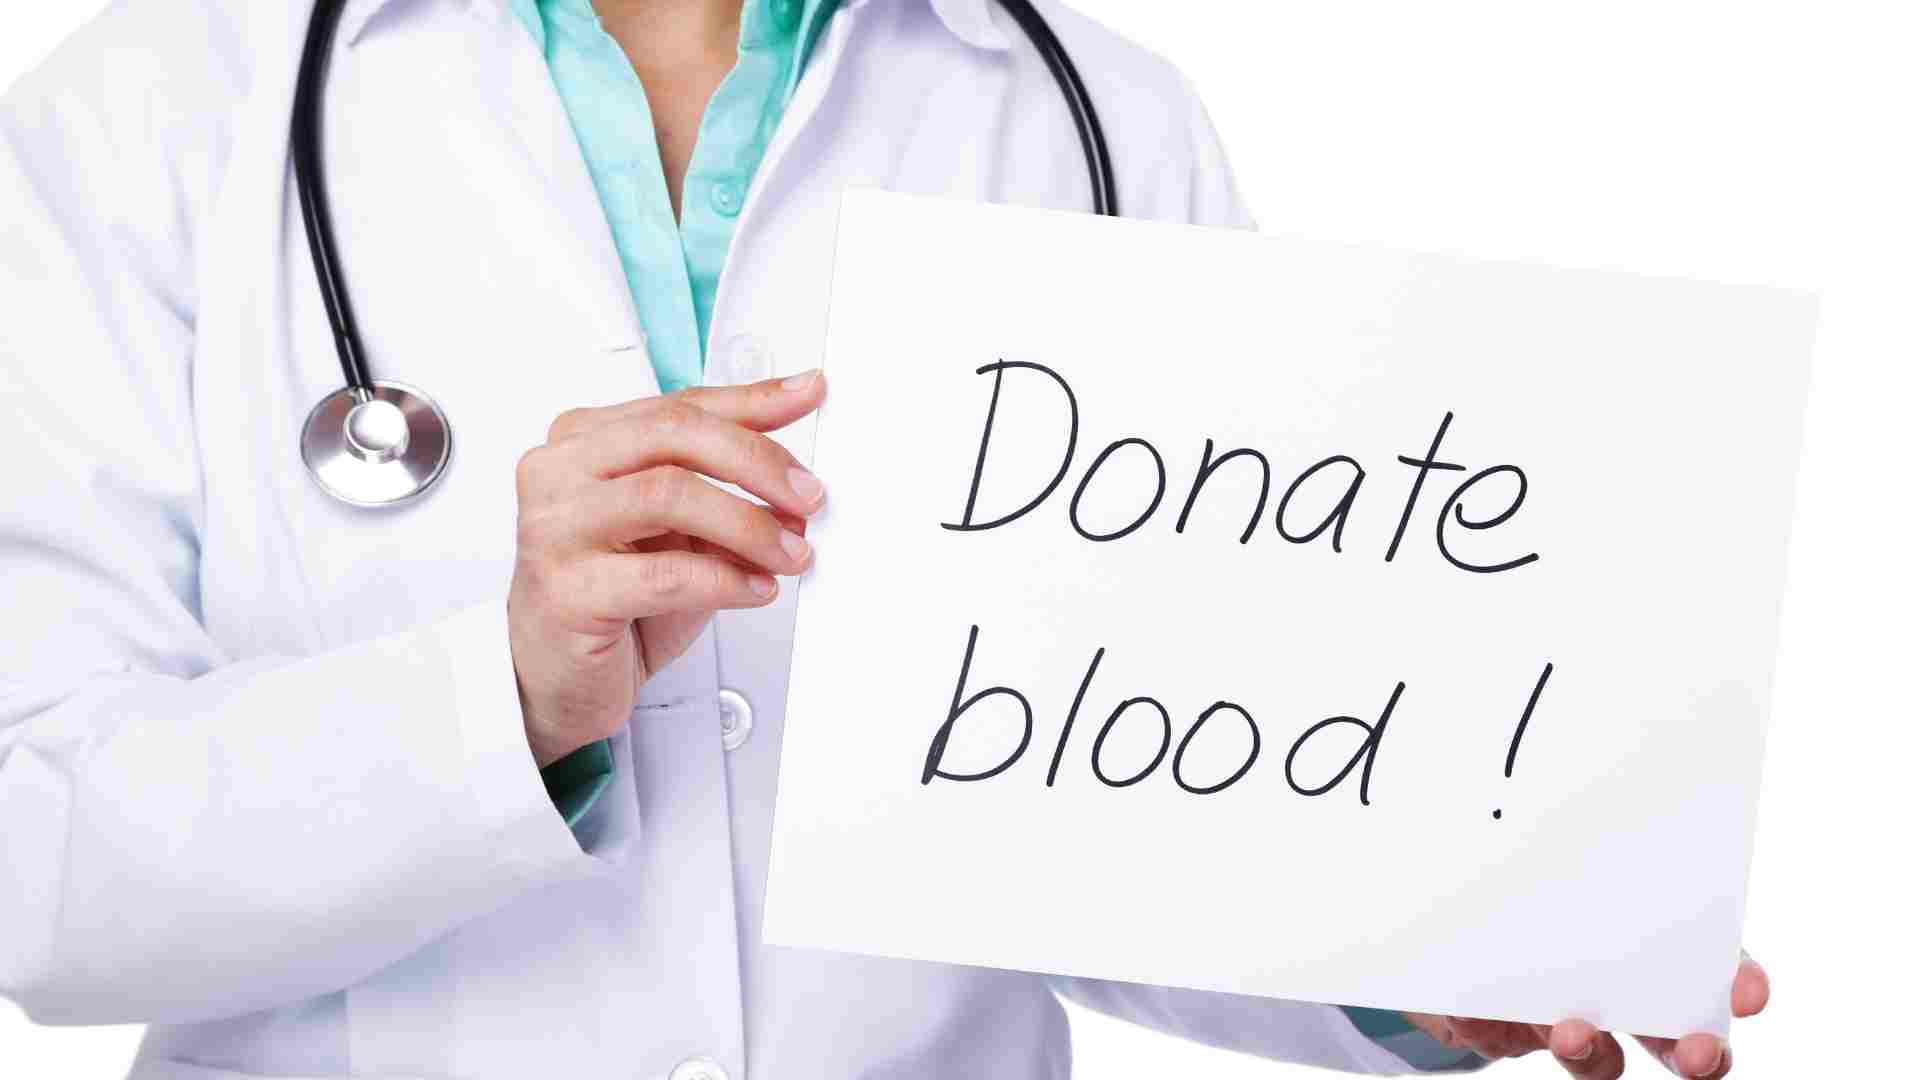 Donor darah bantu sesama